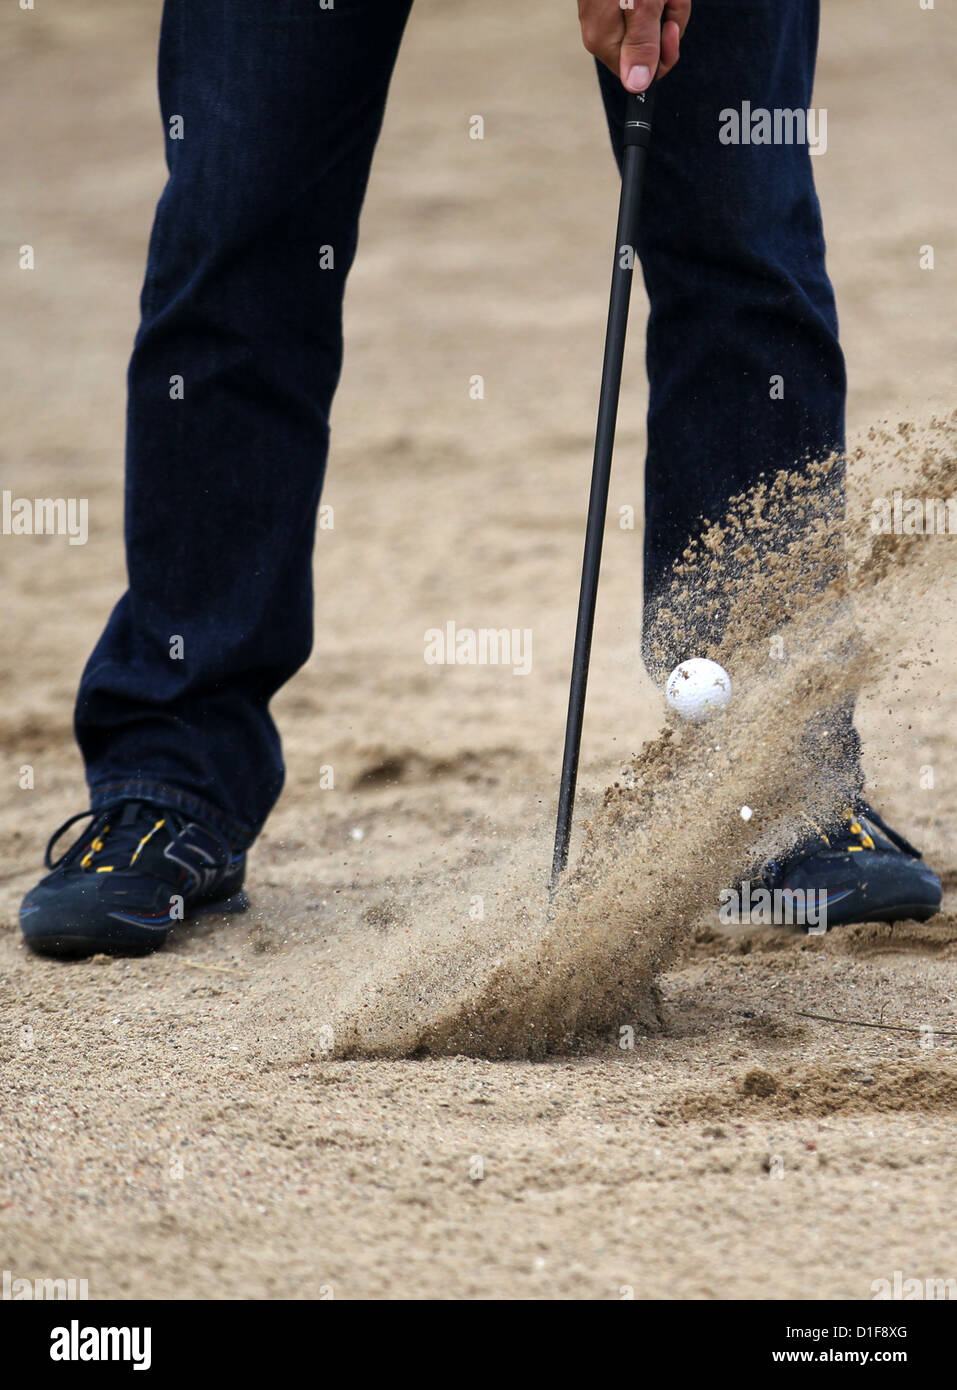 Ein Mann abschlägt während einer Übung auf dem Golf Platz Warnemünde Diedrichshagen, Deutschland, 28. Juni 2012. Die Anzahl der Golftouristen in Deutschland wird kontinuierlich erhöht. Foto: Jens Büttner Stockfoto